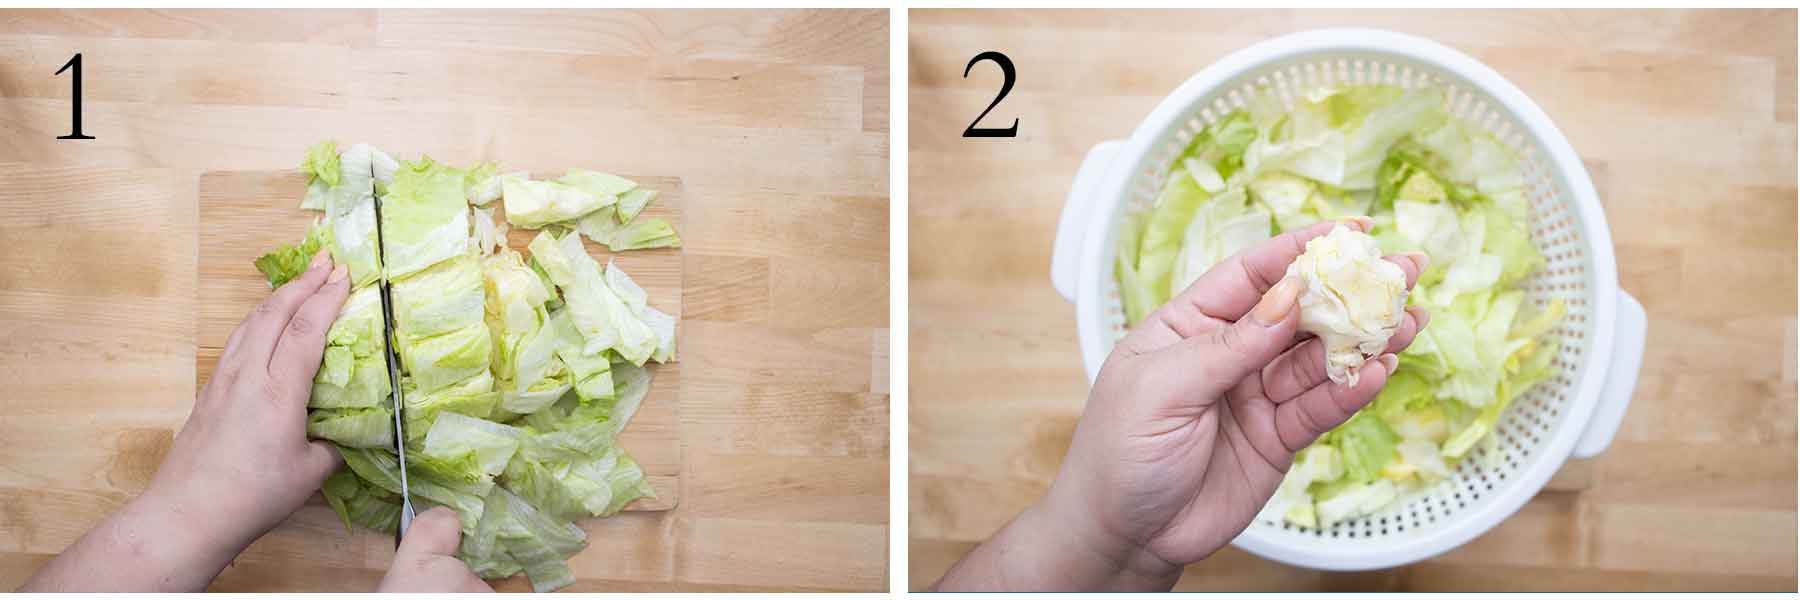 pasos 1 y 2 de como se hace una simple ensalada verde.